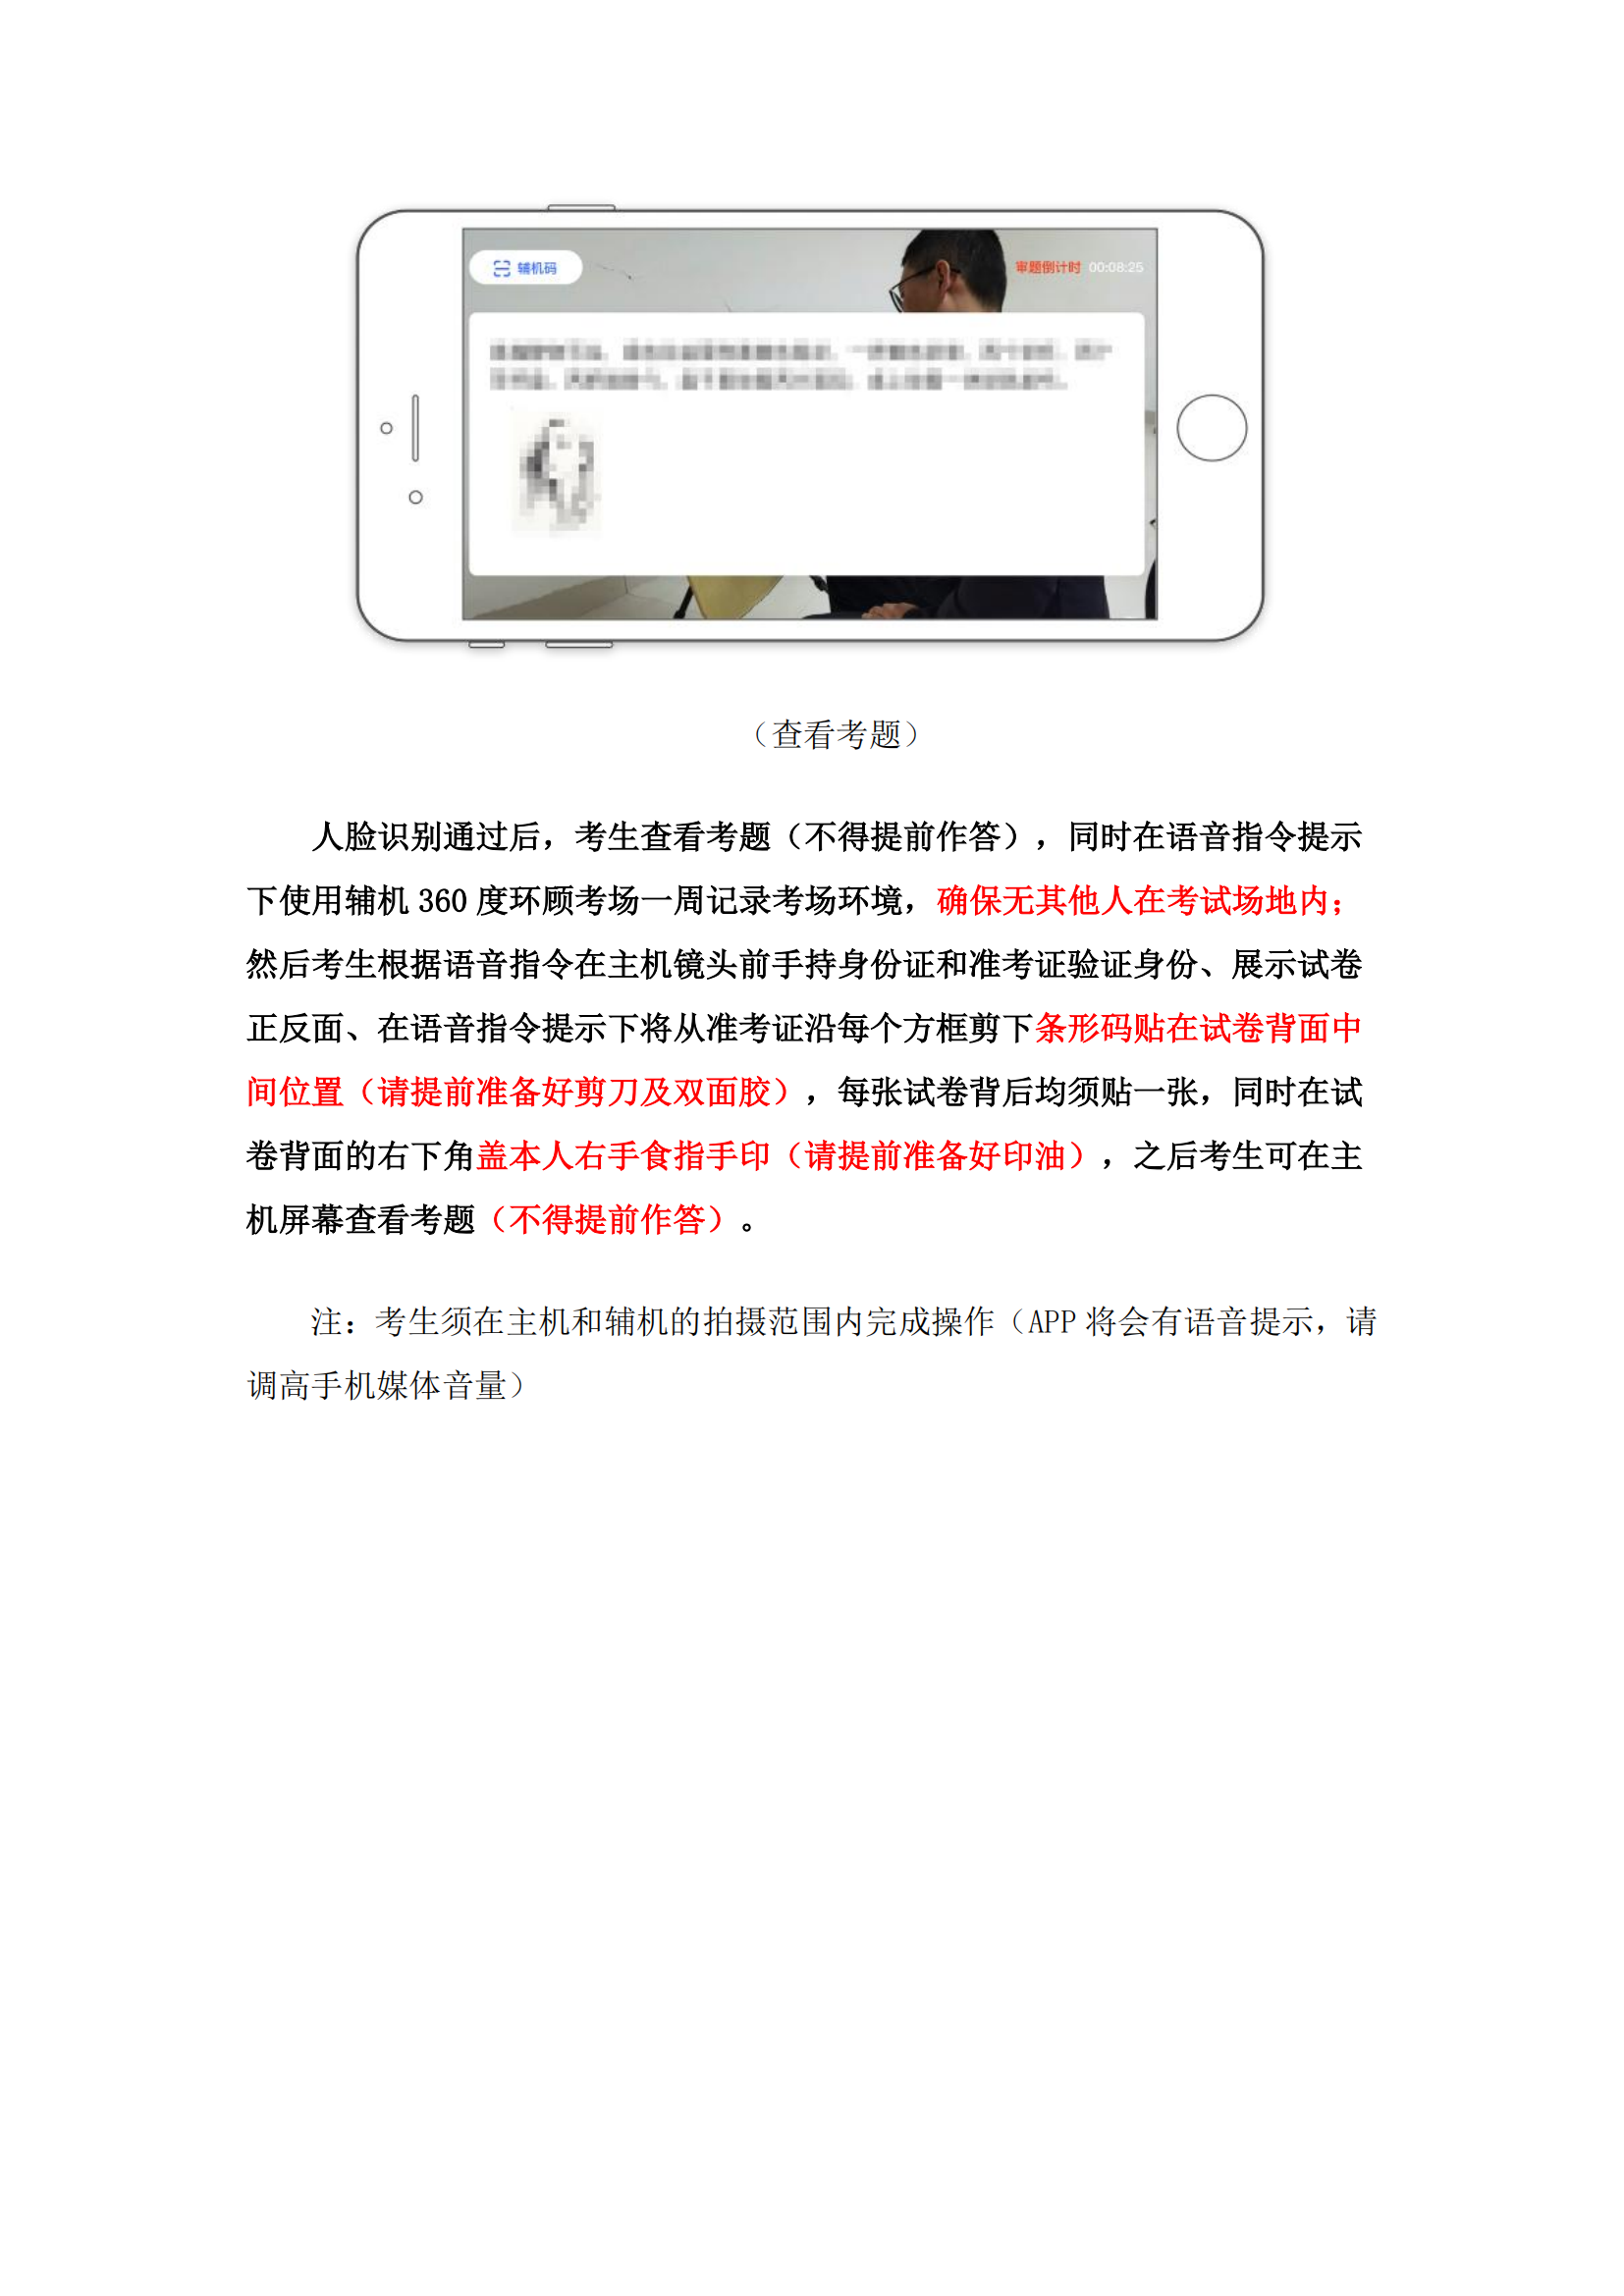 附件1：广州美术学院艺术升APP网络考试操作说明_06.png